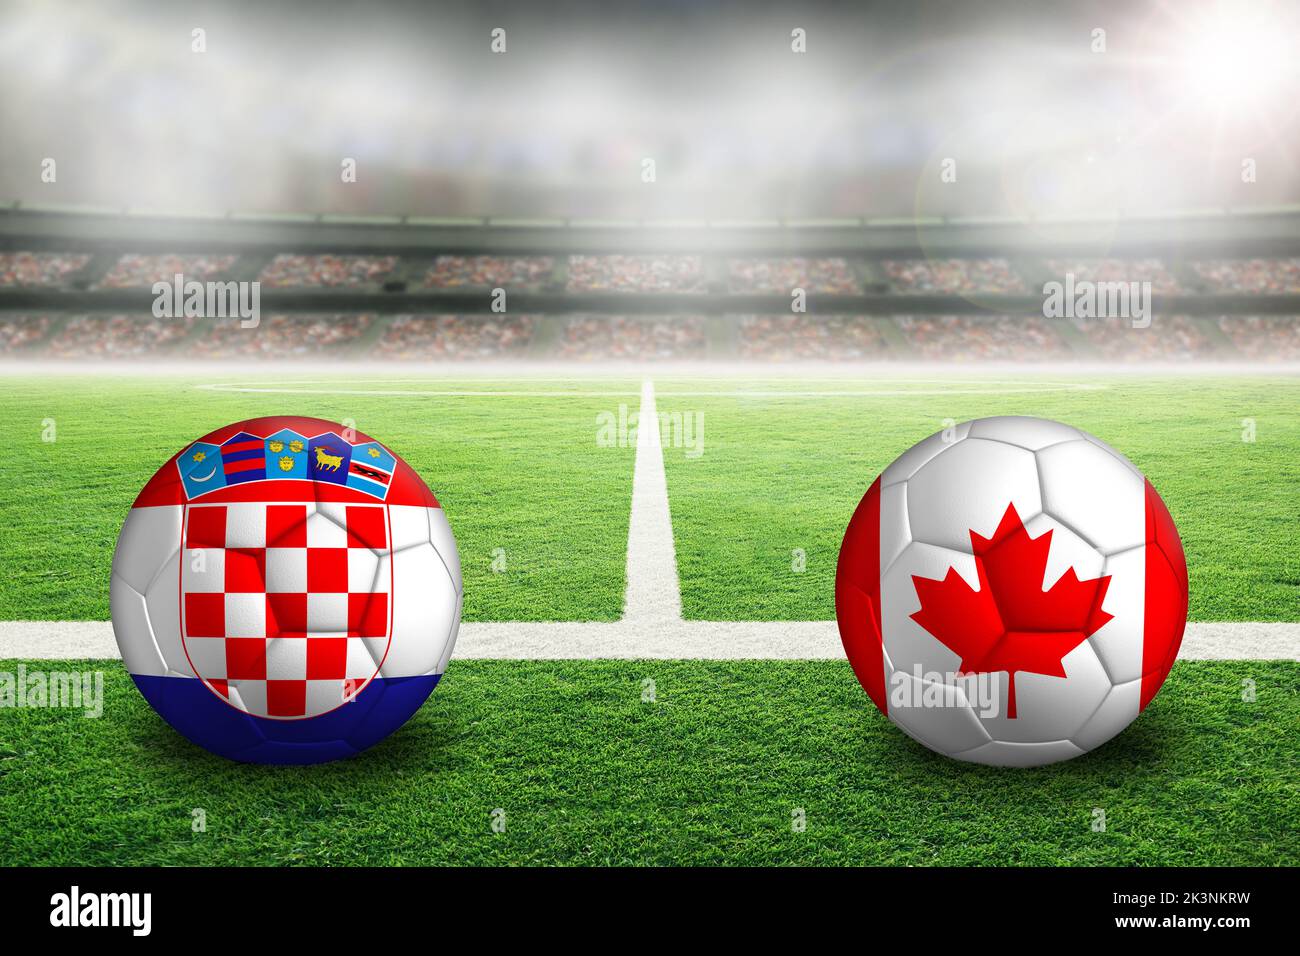 La Croatie contre le football canadien dans un stade extérieur lumineux avec drapeaux croates et canadiens peints. Concentrez-vous sur le premier plan et le ballon de football avec peu profond Banque D'Images